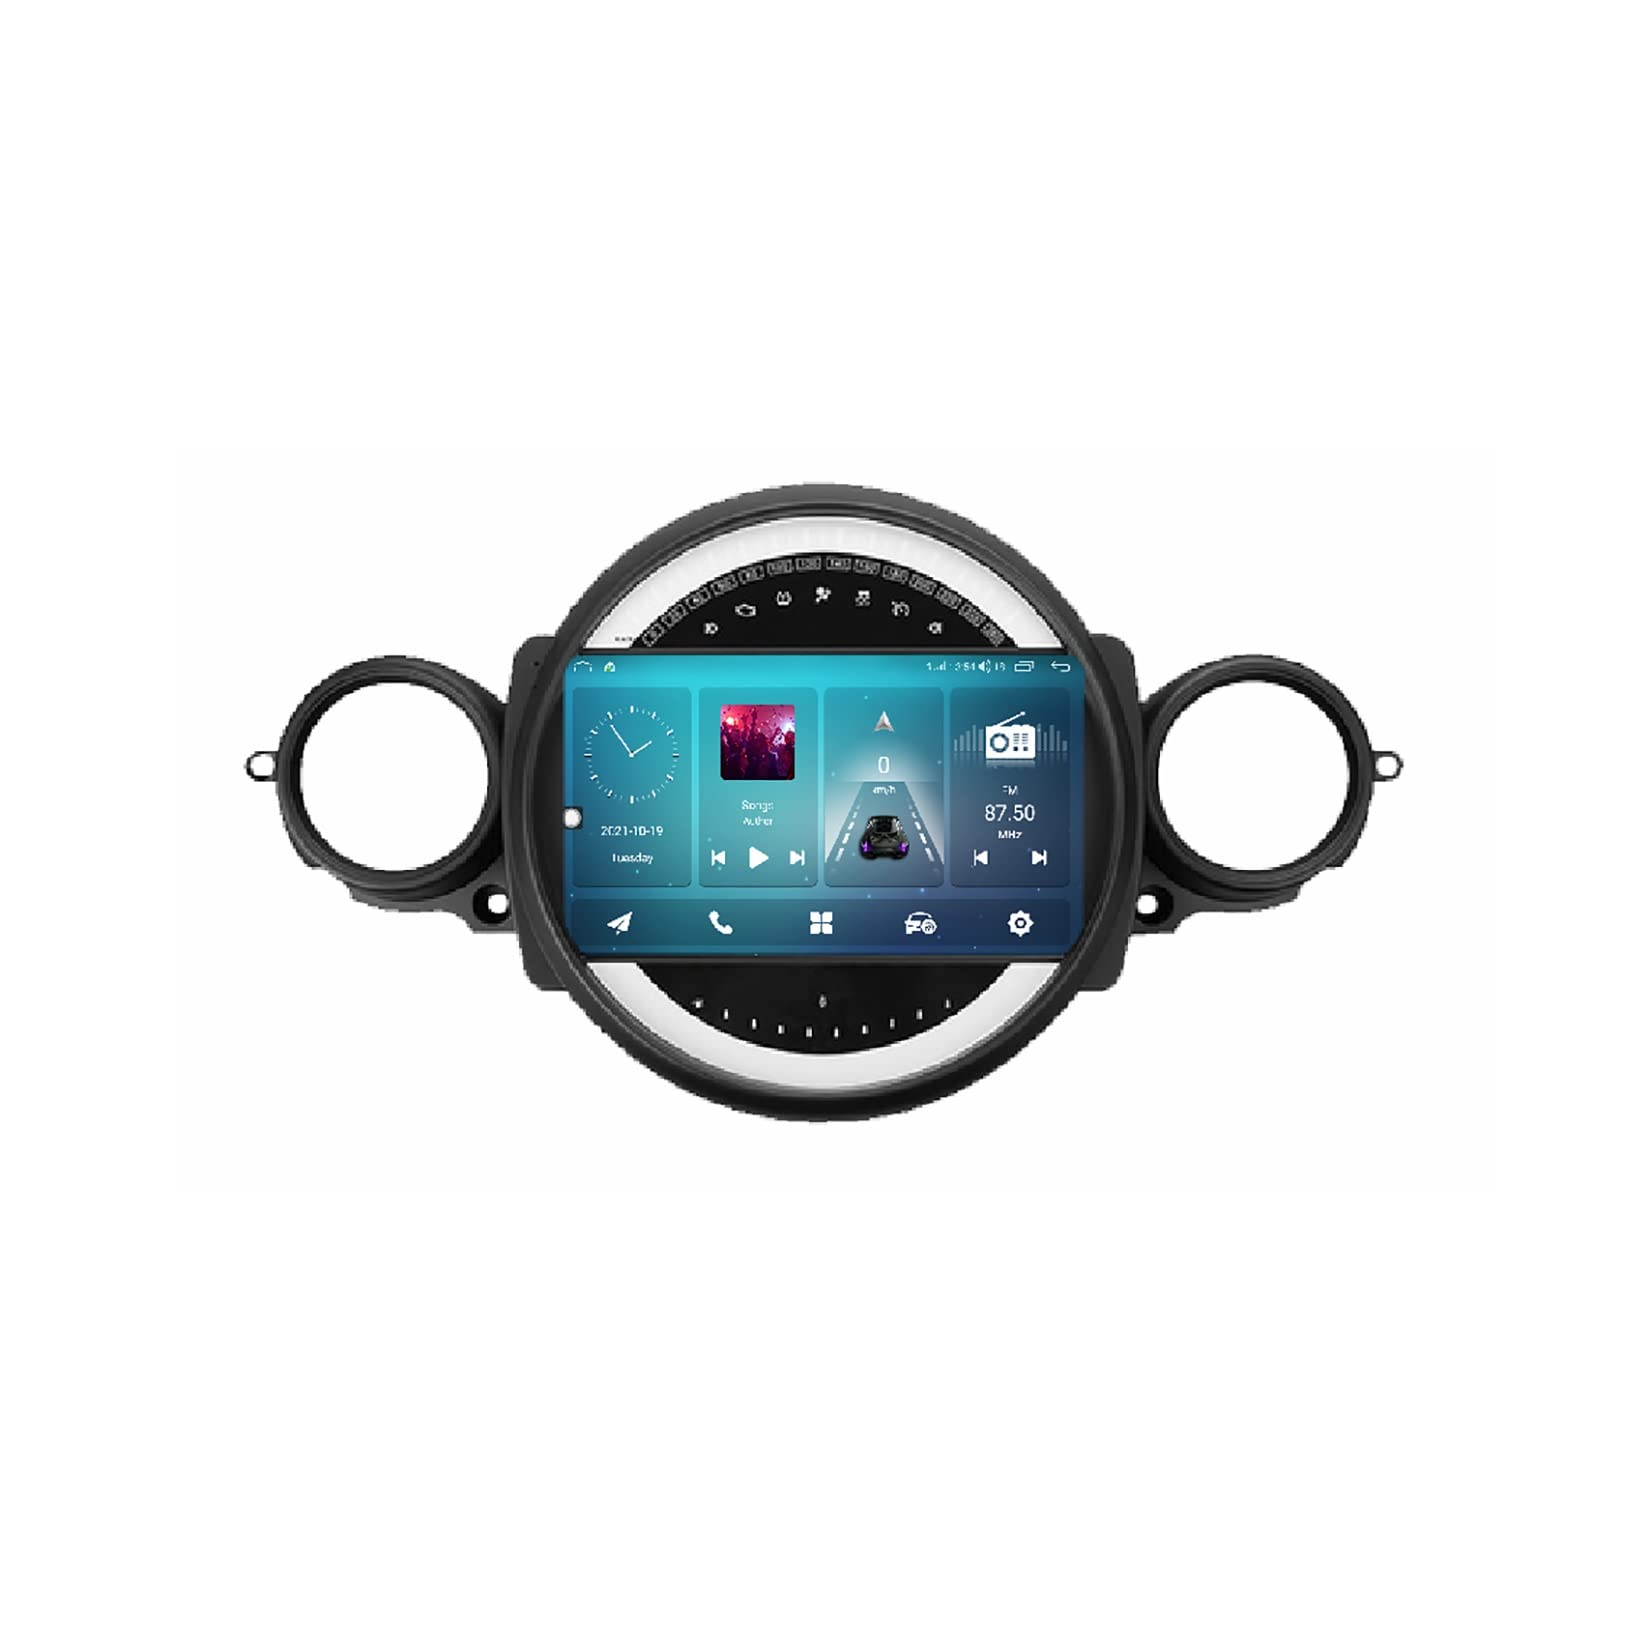 Android 11 2 DIN Autoradio Radio Für Bmw Mini Cooper R56 R60 R51 2006-2014 Auto-Entertainment-System Mit 9 Zoll Touchscreen Car Radio Unterstützt Bluetooth-Freisprechen WiFi USB Canbus GPS von Eouyt